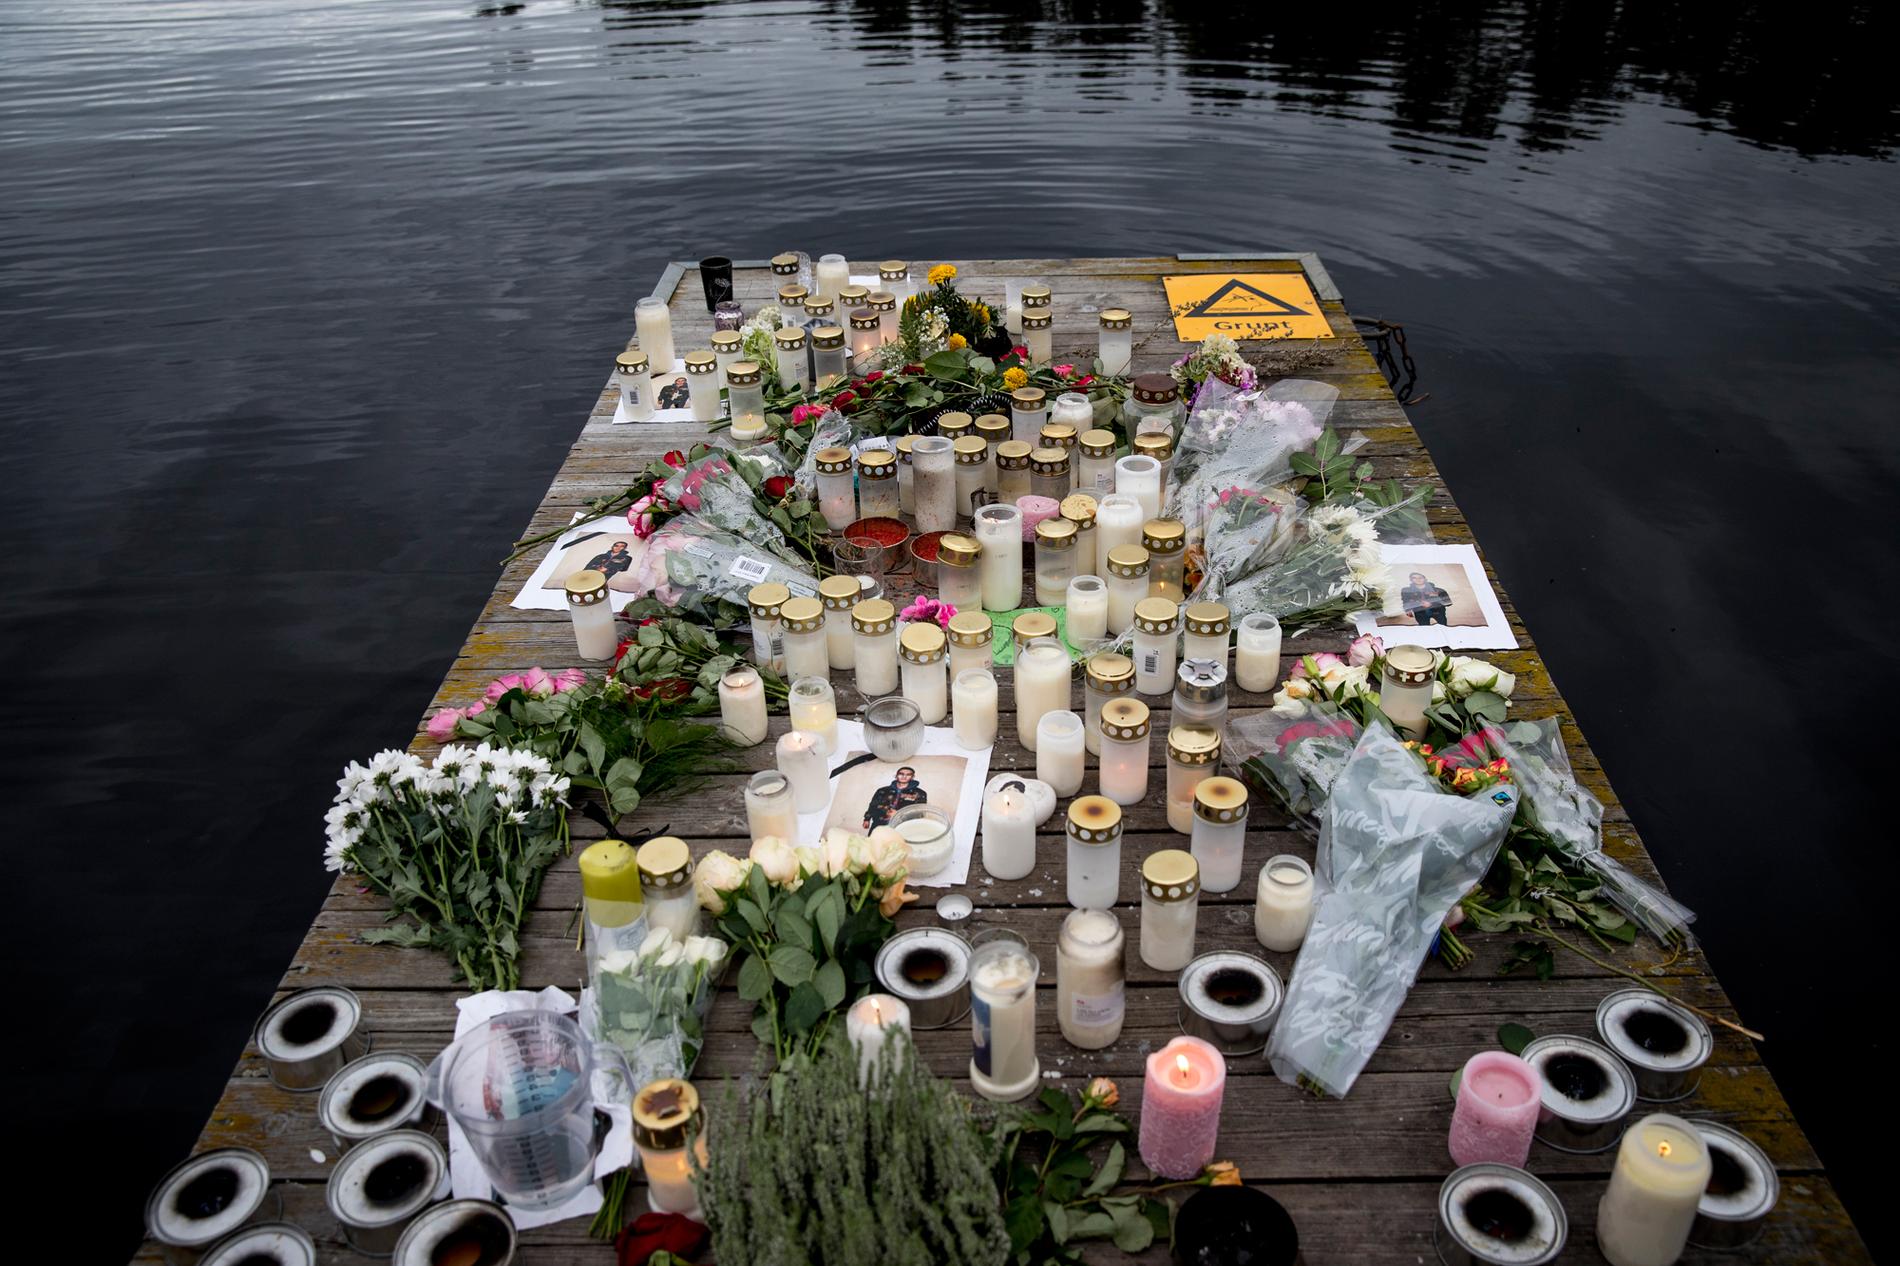 På en brygga vid Linneasjön har vänner, familj och boende i området tänt ljus och lämnat blommor för att hedra och minnas Saif. 